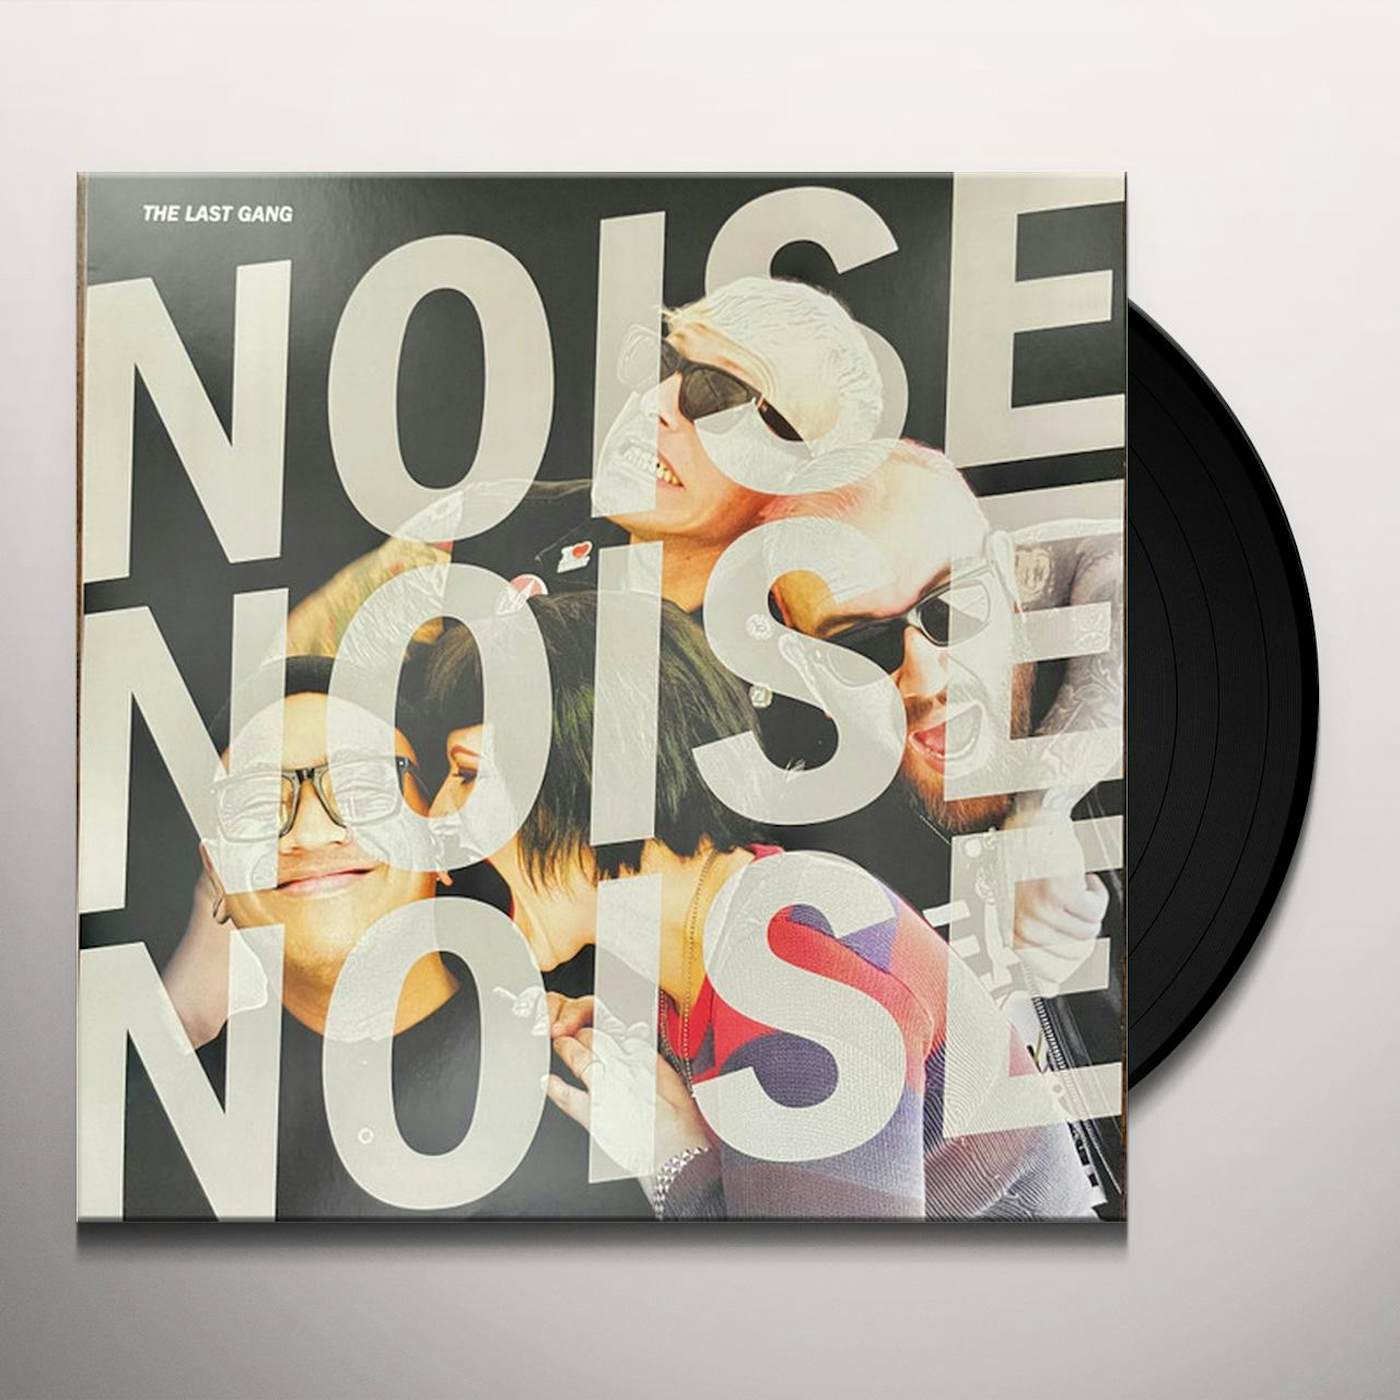 The Last Gang Noise Noise Noise Vinyl Record